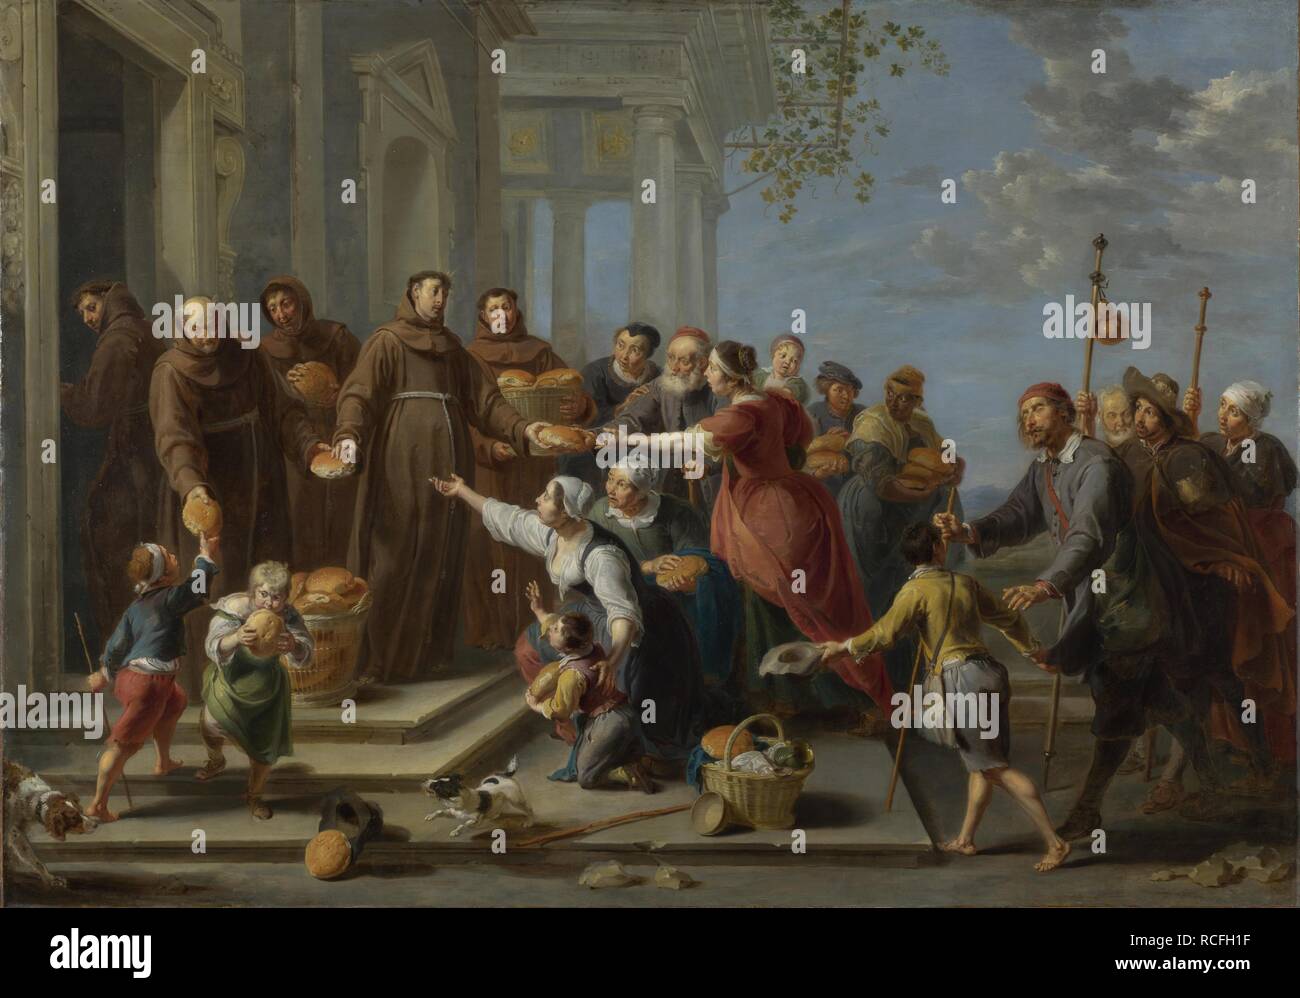 Der heilige Antonius von Padua Verteilen von Brot. Museum: National Gallery, London. Autor: Herp, Willem van, der Ältere. Stockfoto